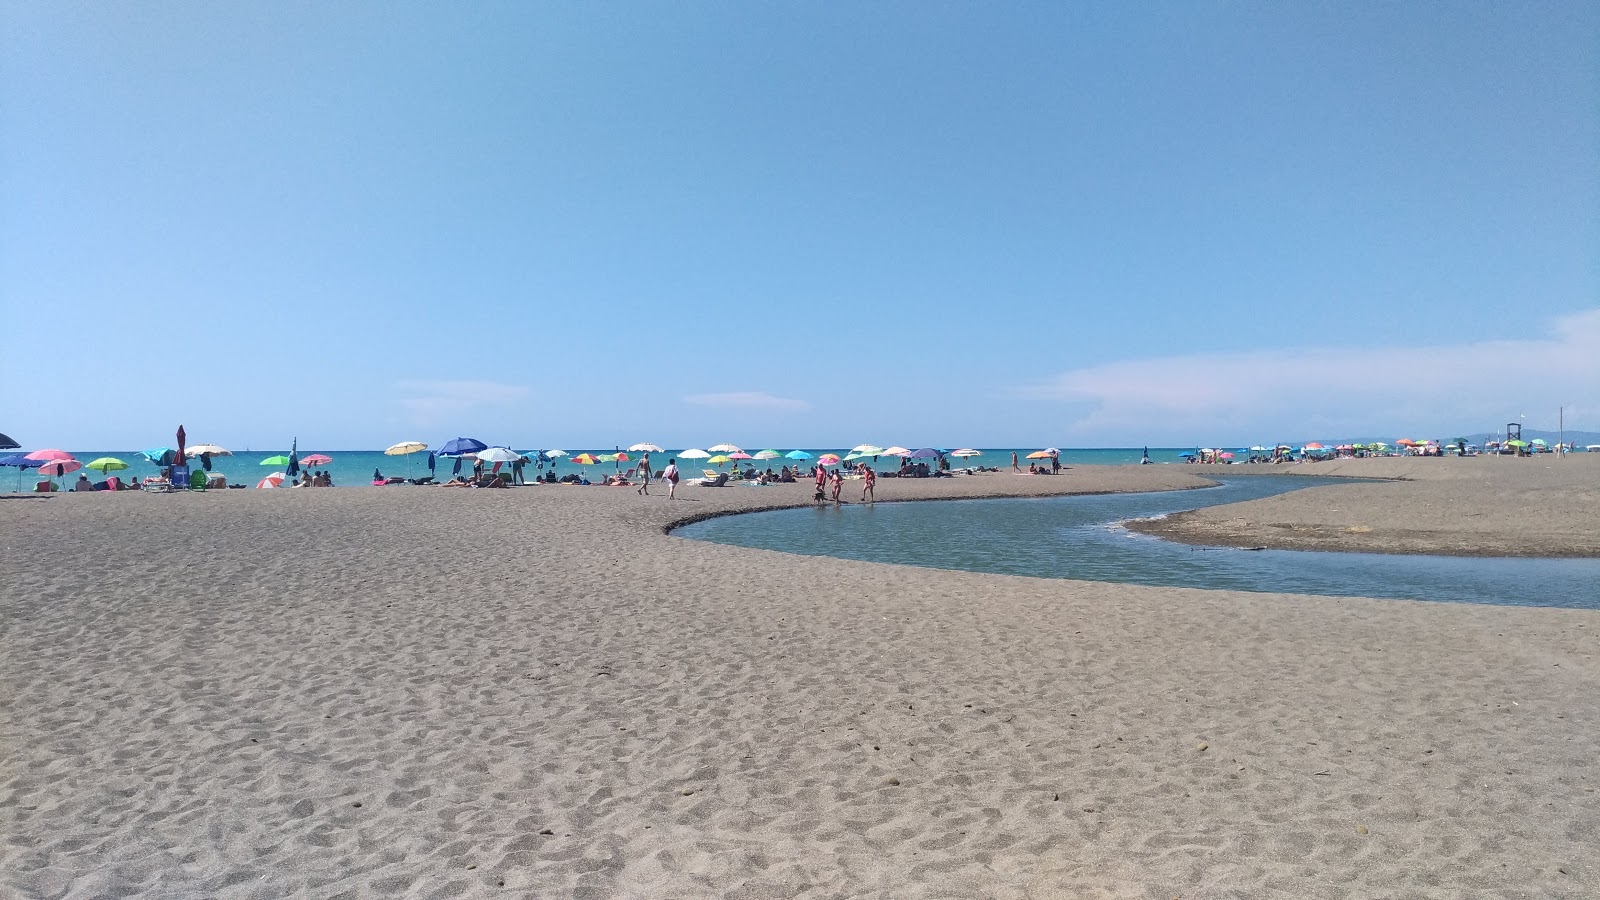 Foto af Etruria beach - populært sted blandt afslapningskendere